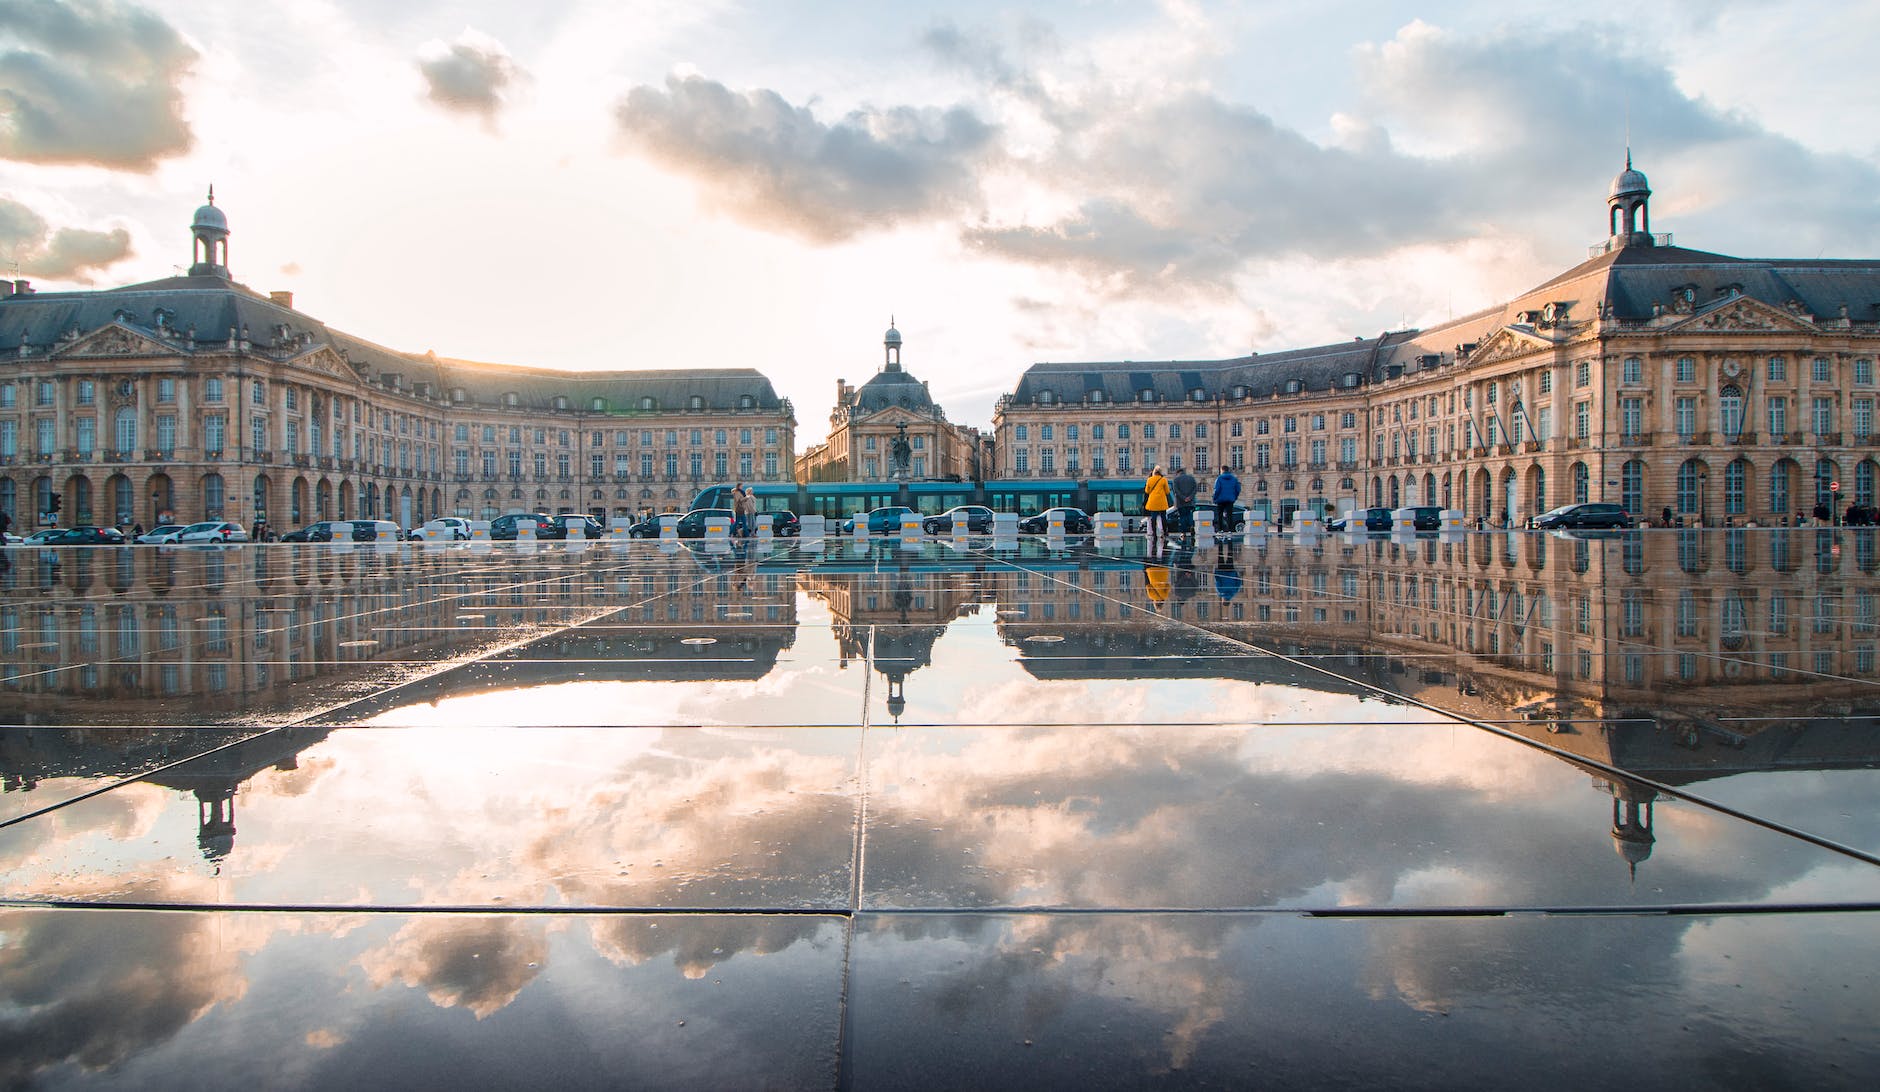 La photo représente le Palais de la Bourse de Bordeaux qui est reflété dans un grand miroir d'eau devant lui. Le bâtiment historique présente une façade de pierre ornée et un tramway passe devant le palais. Le miroir d'eau est parfaitement calme, reflétant le palais de manière claire et nette. Les couleurs dominantes de la photo sont le bleu, le gris et le brun. Il y a également quelques nuages dans le ciel.